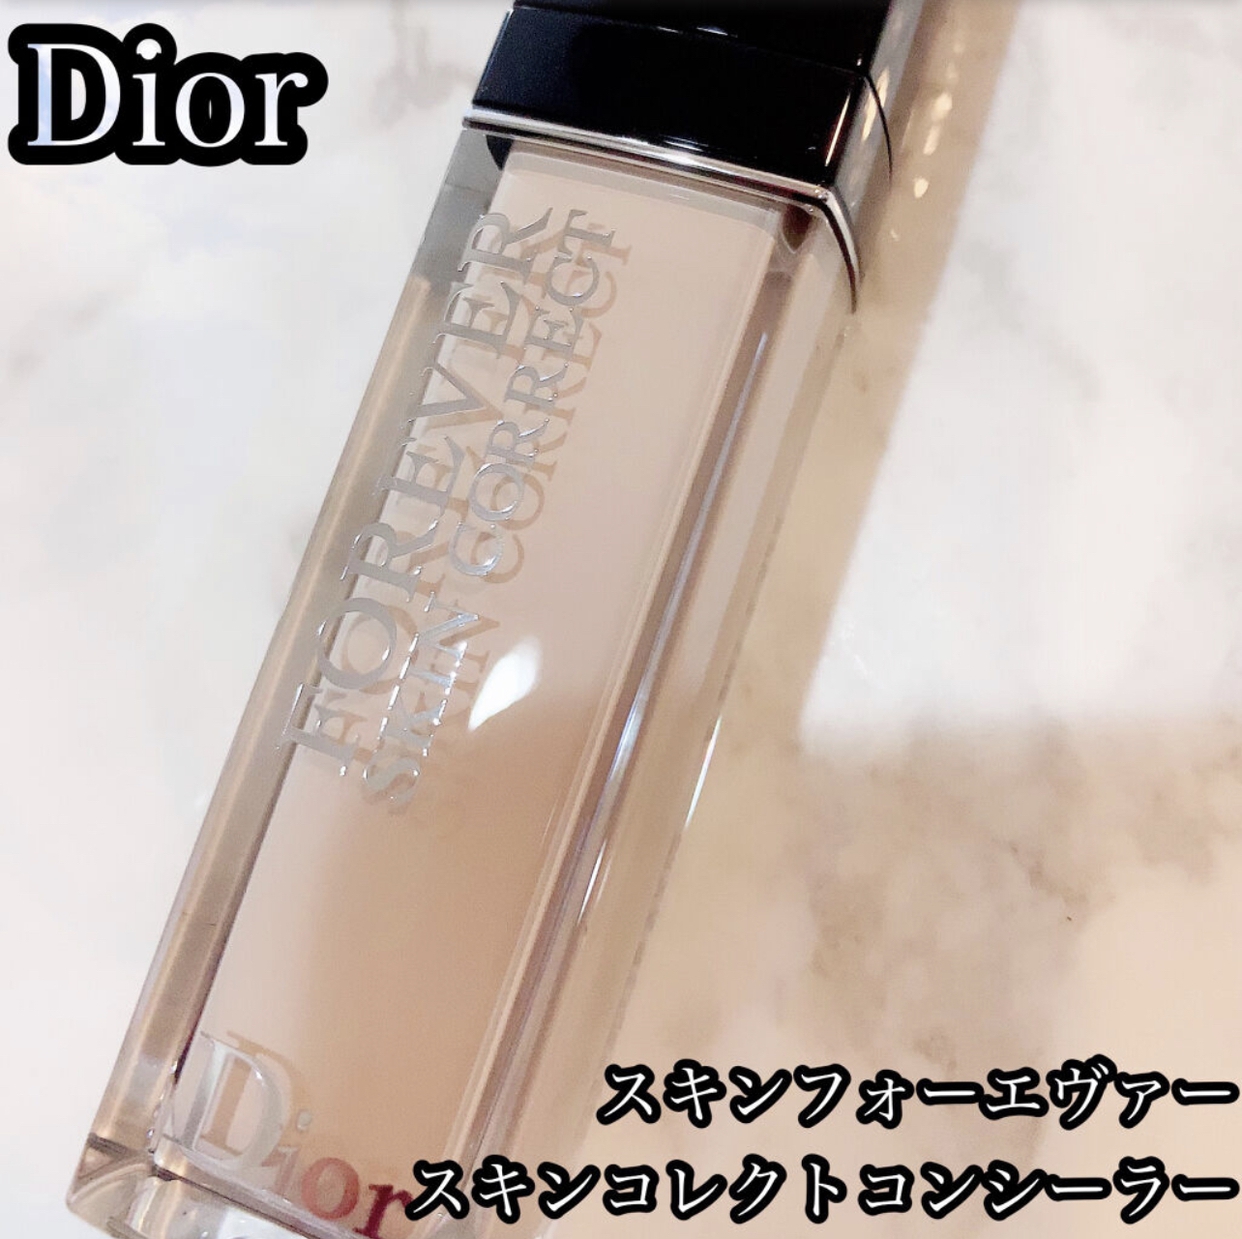 Dior(ディオール) スキン フォーエヴァー スキン コレクト コンシーラーの良い点・メリットに関するchamaru222さんの口コミ画像1